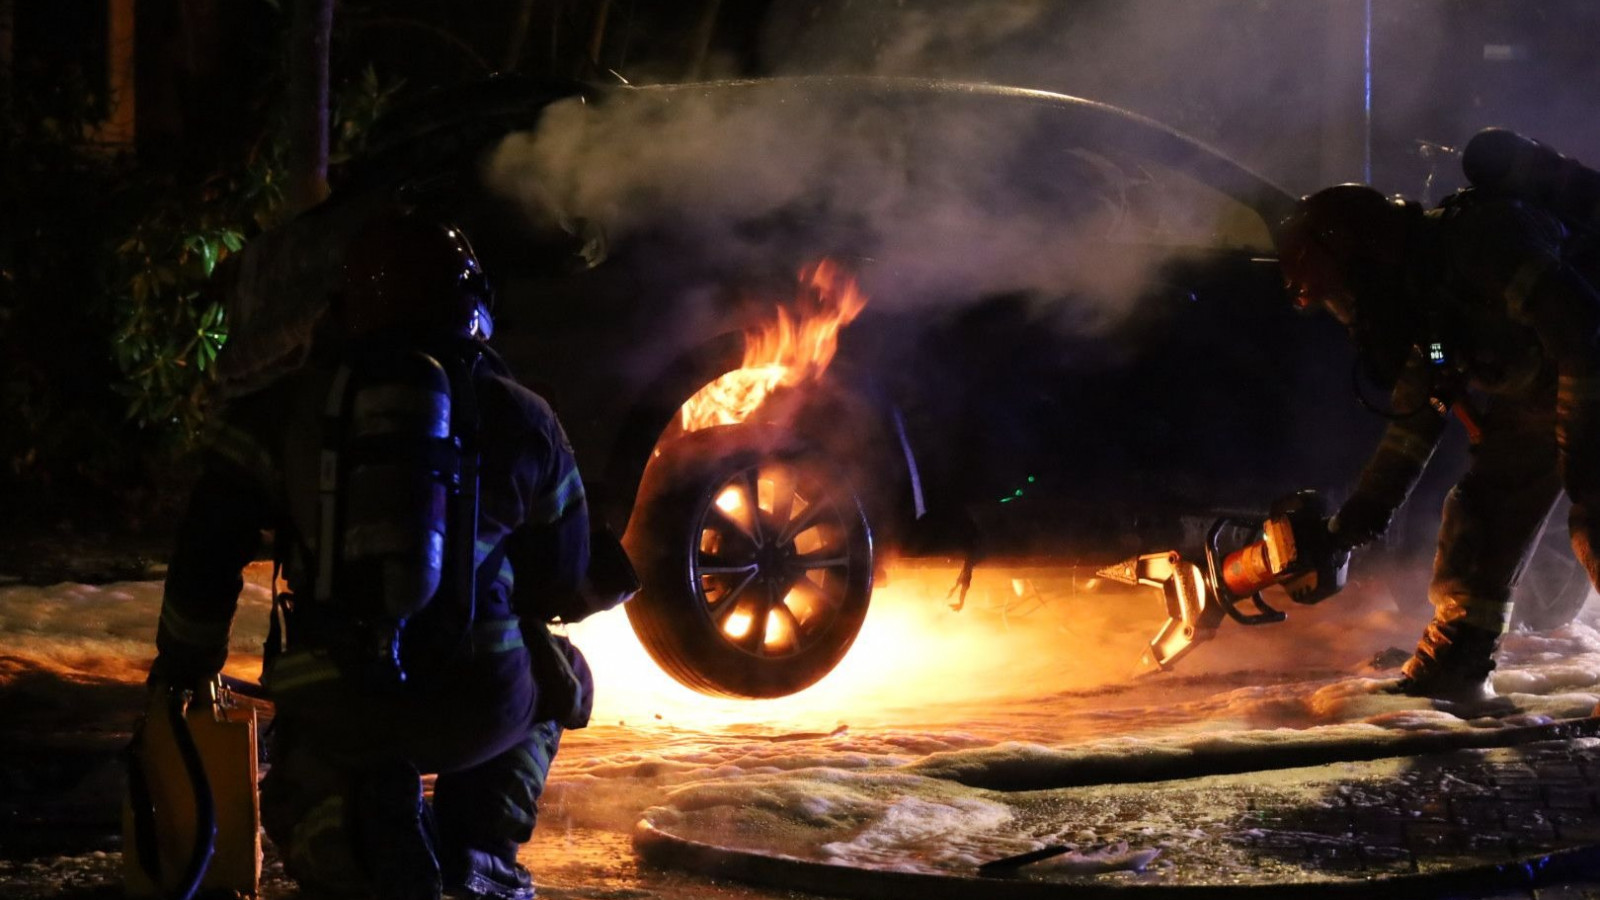 Brandweer ruim een uur bezig met blussen van brand in hybride auto